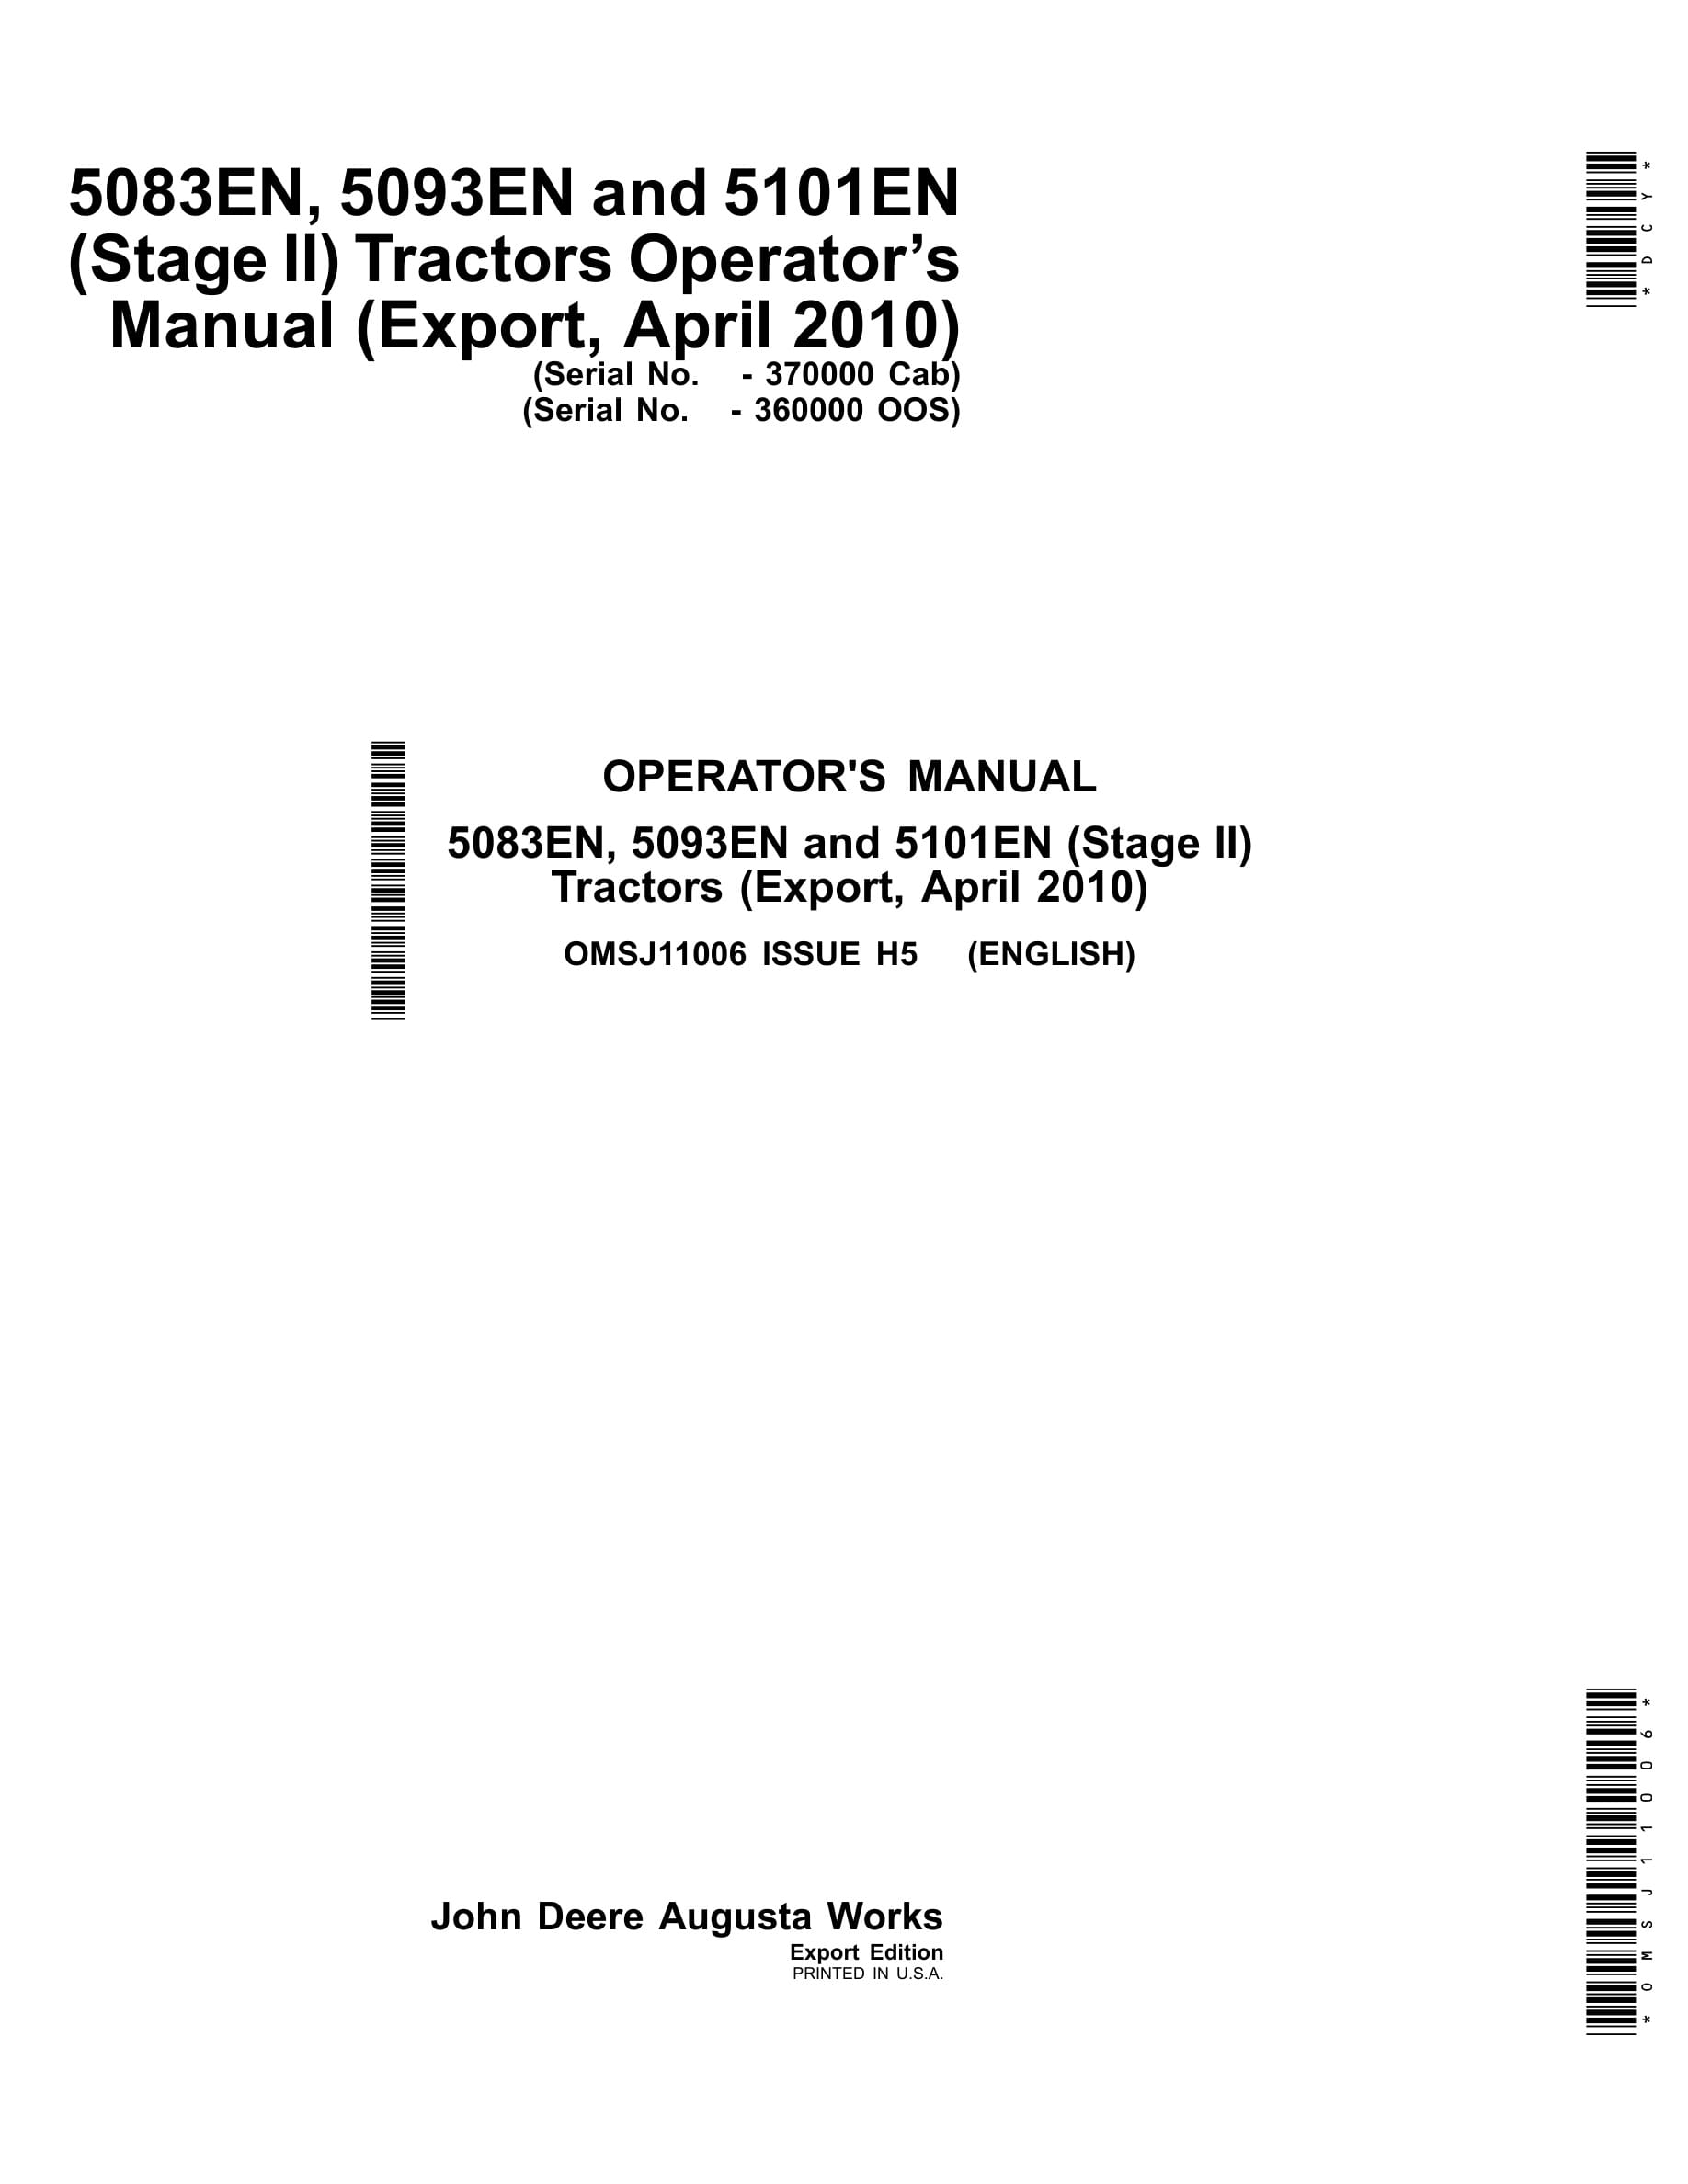 John Deere 5083en, 5093en And 5101en (stage Ii) Tractors Operator Manuals OMSJ11006-1